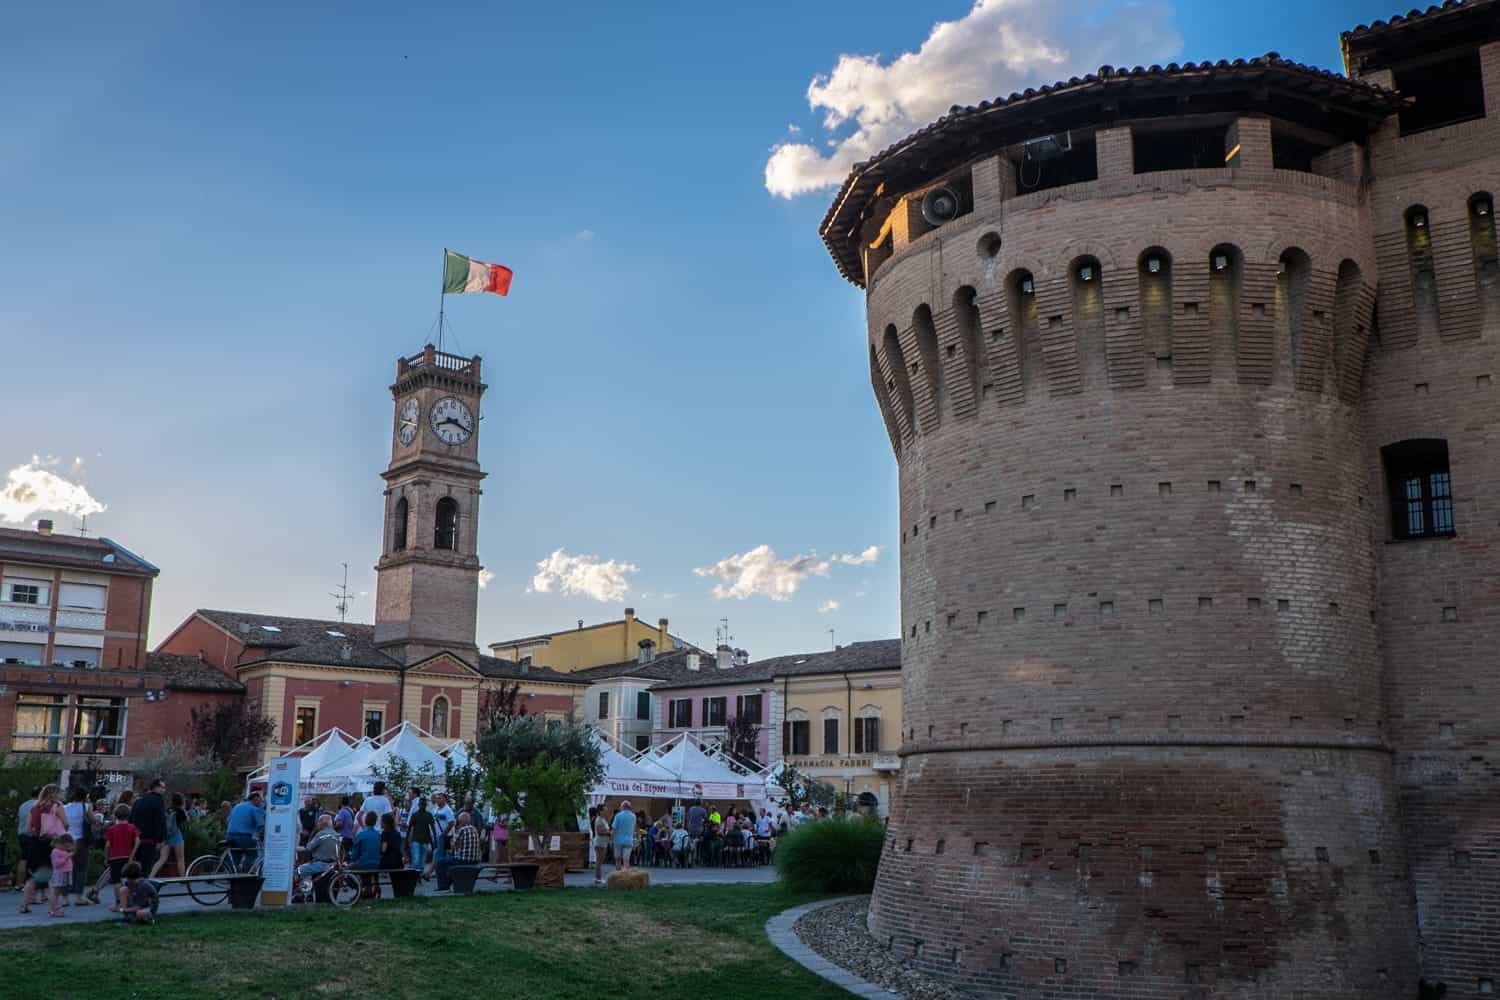 The Artusi festival / ‘Festa Artusiana’ in Forlimpopoli in Emilia Romagna, Italy